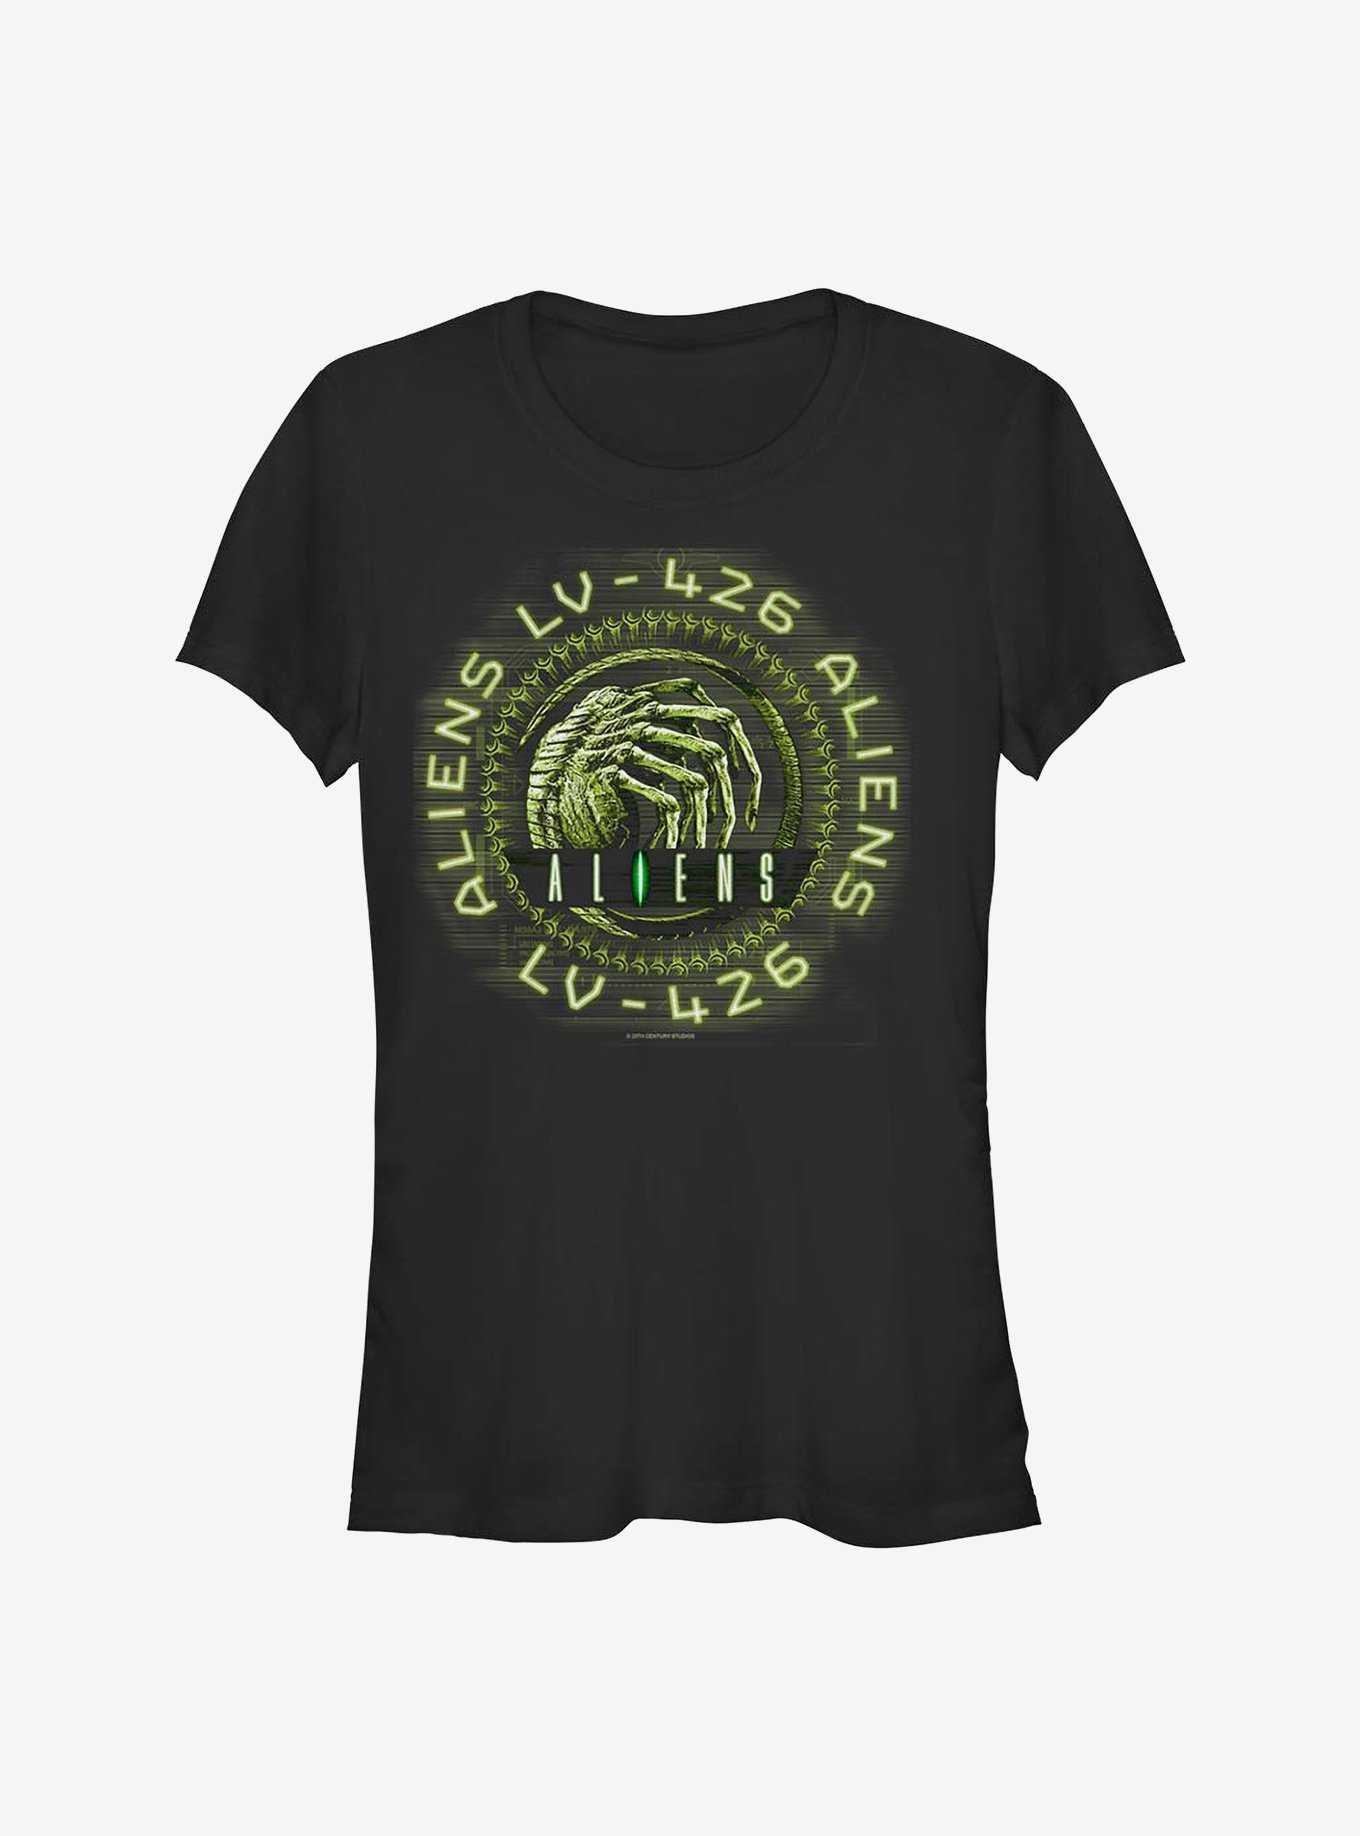 Alien Aliens LV-426 Girls T-Shirt, , hi-res